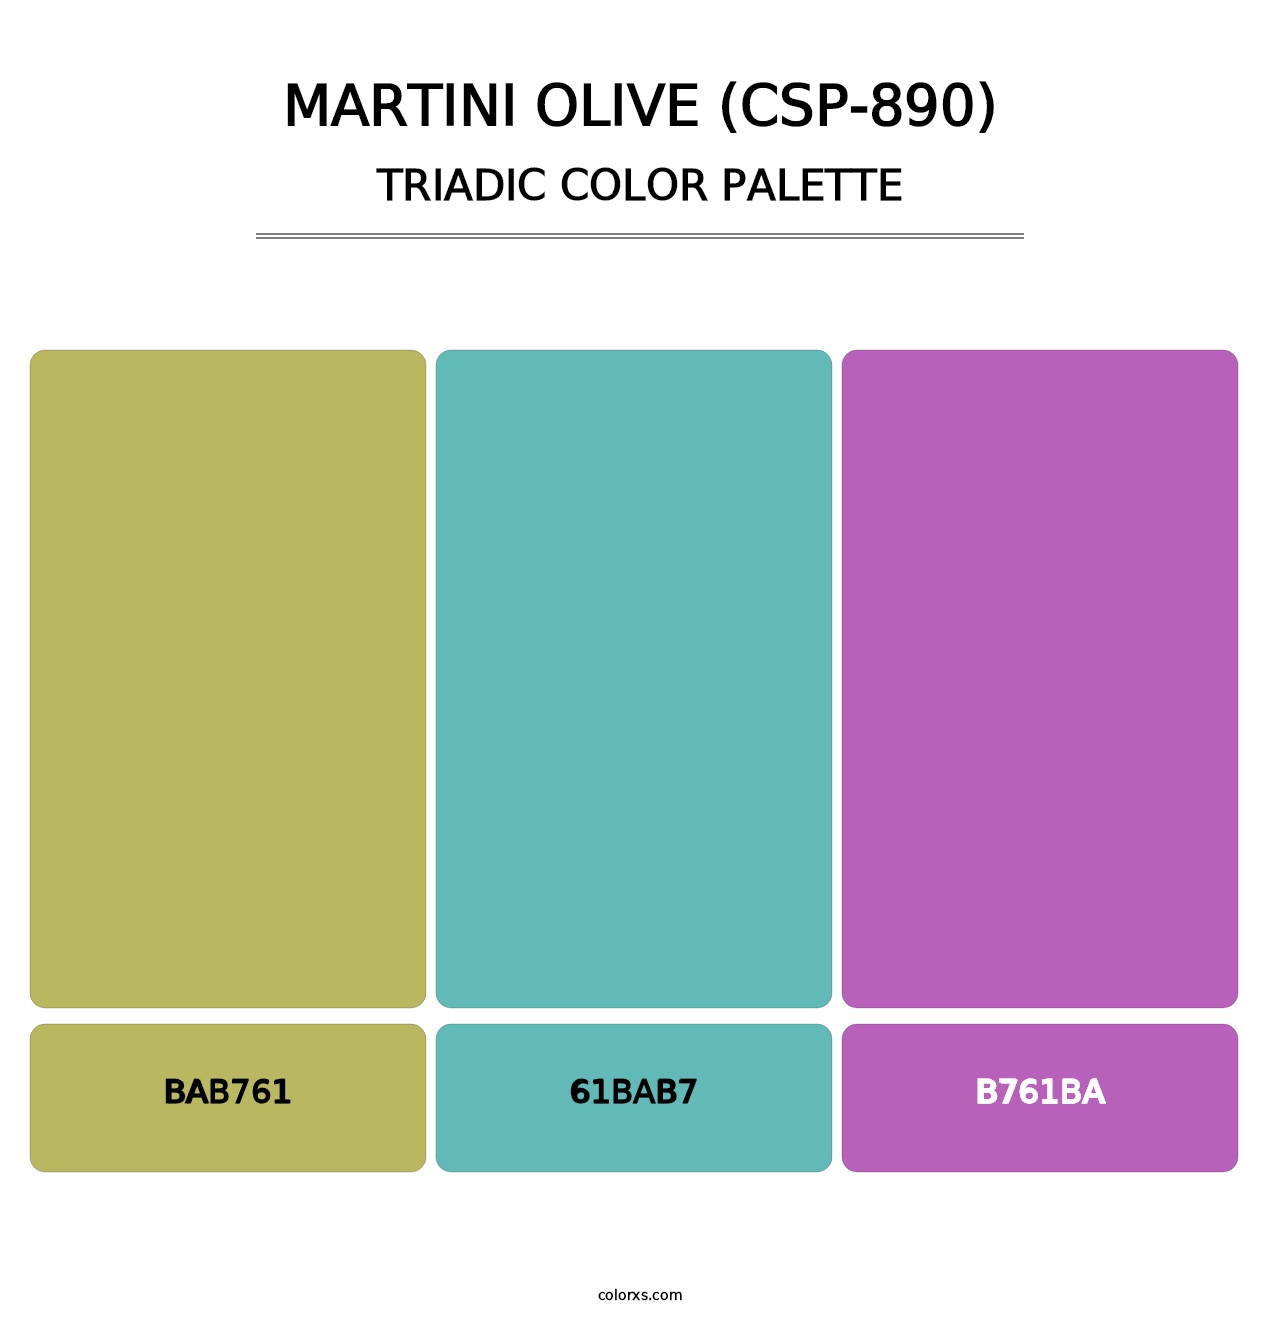 Martini Olive (CSP-890) - Triadic Color Palette